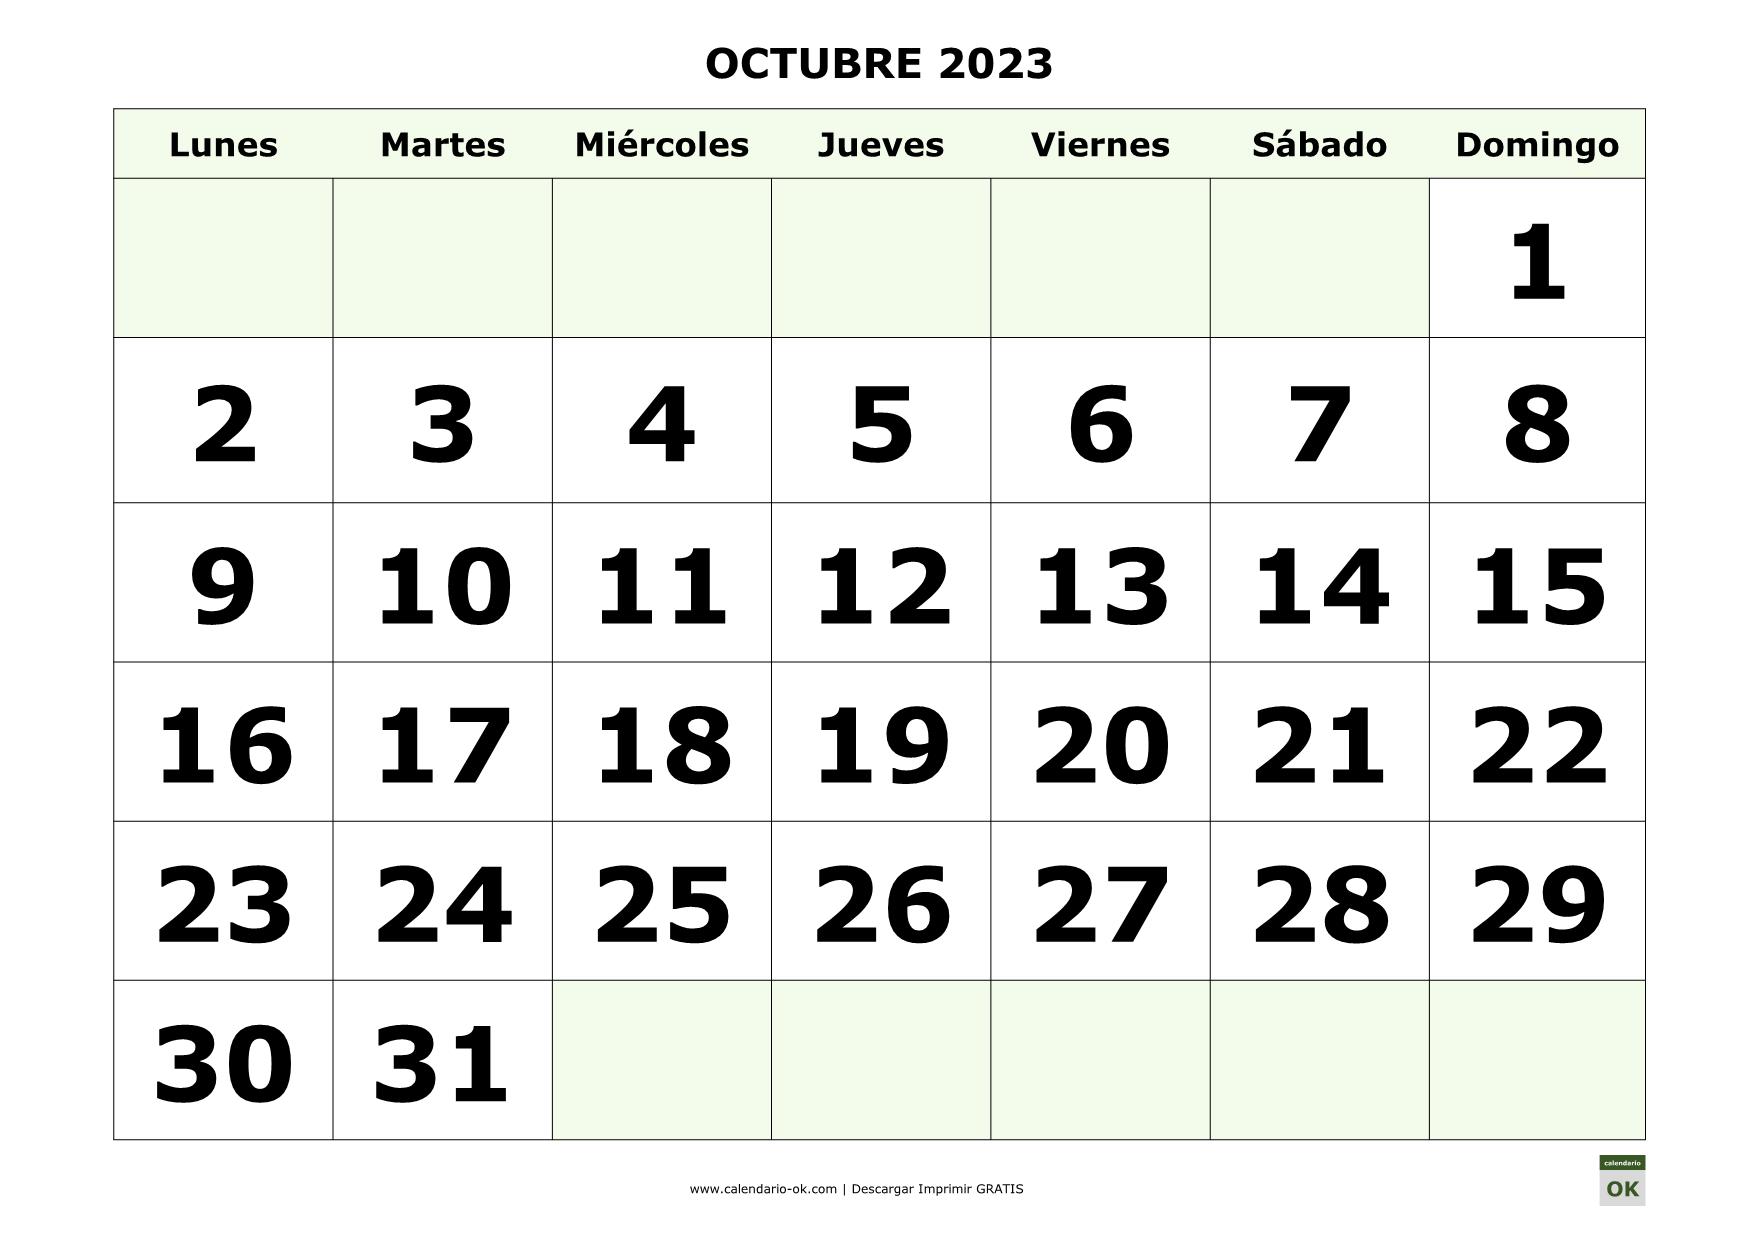 OCTUBRE 2023 con NUMEROS GRANDES